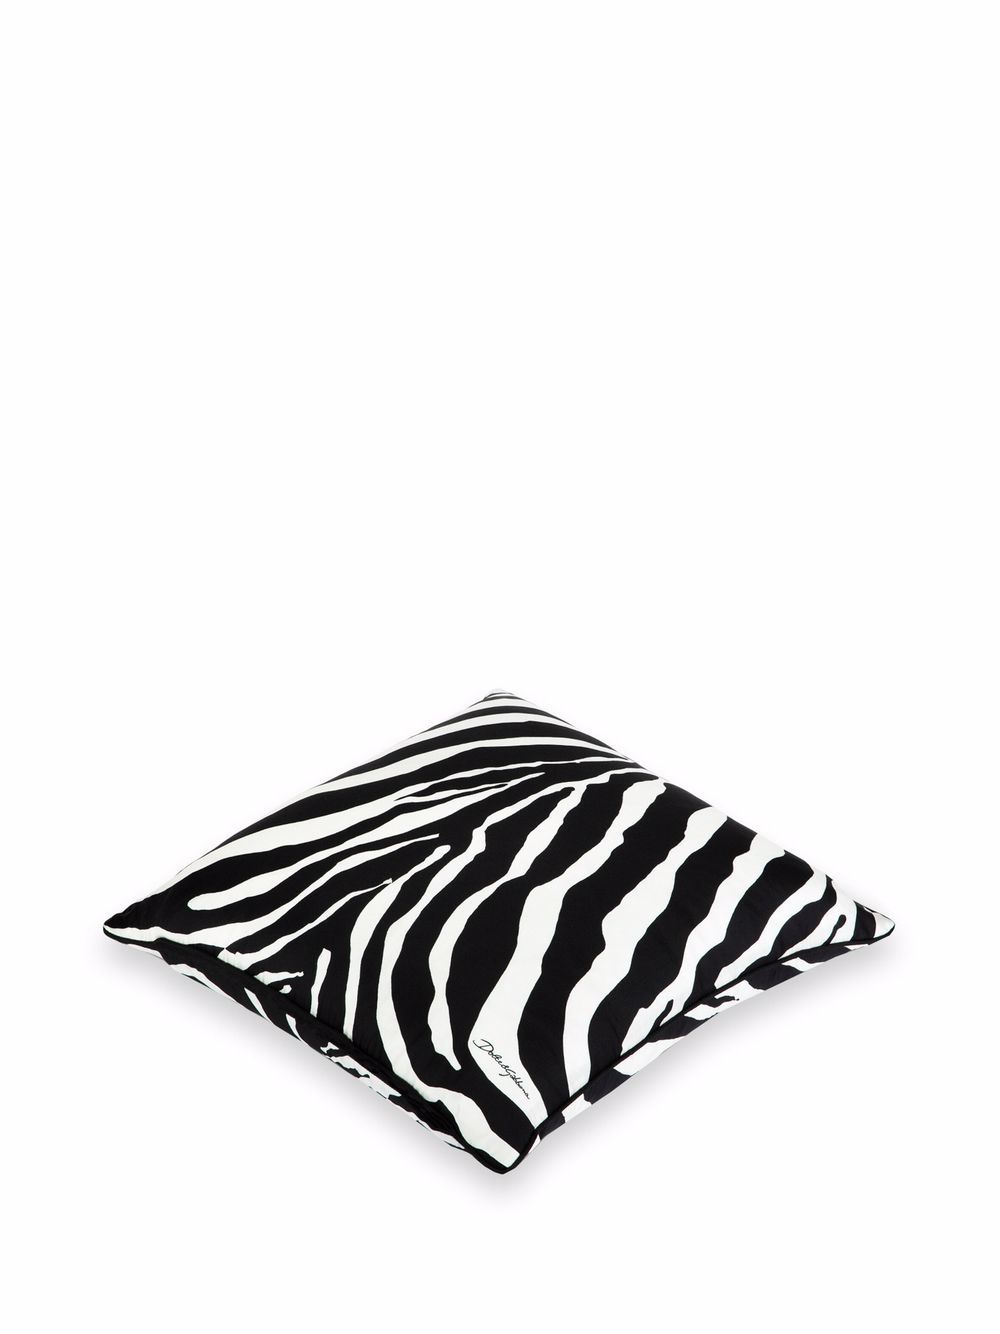 фото Dolce & gabbana шелковая подушка с зебровым принтом